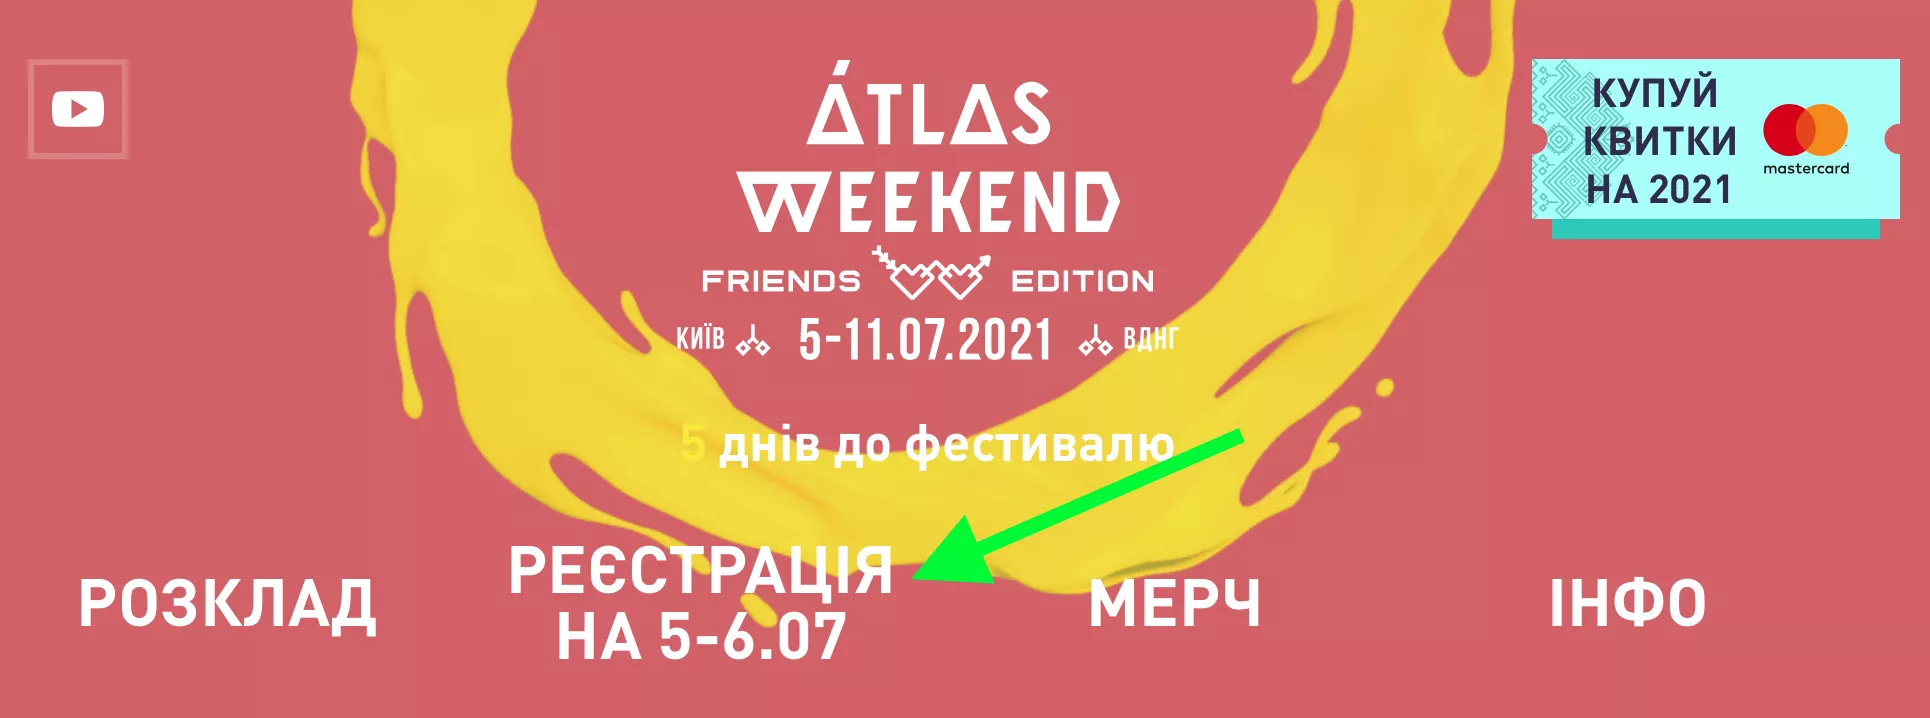 Как получить бесплатный билет на Atlas Weekend-2021